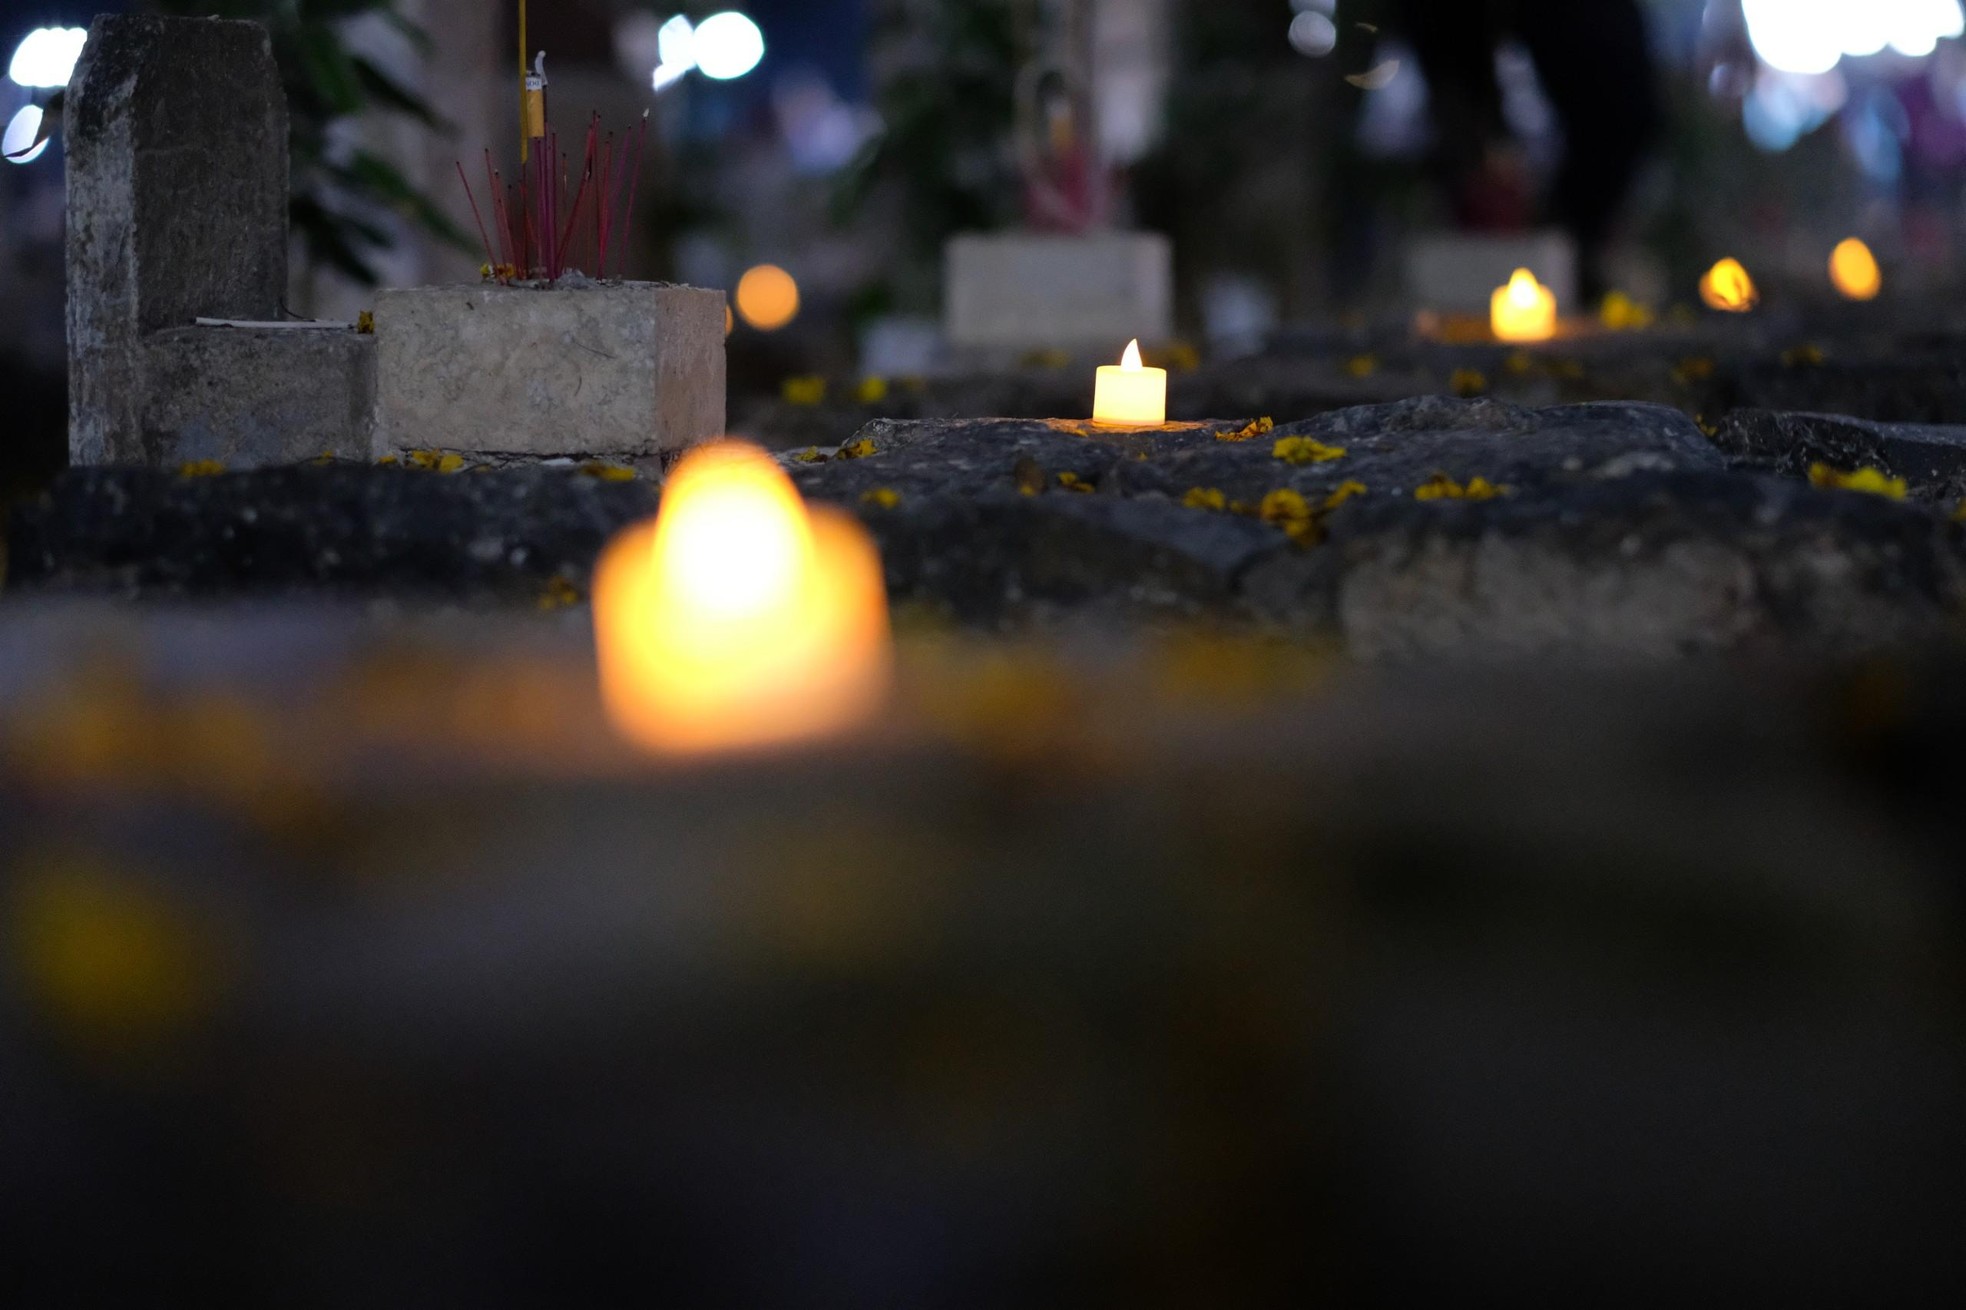 Xúc động hình ảnh những ngọn nến trong đêm ở Nghĩa trang Hàng Dương ảnh 7